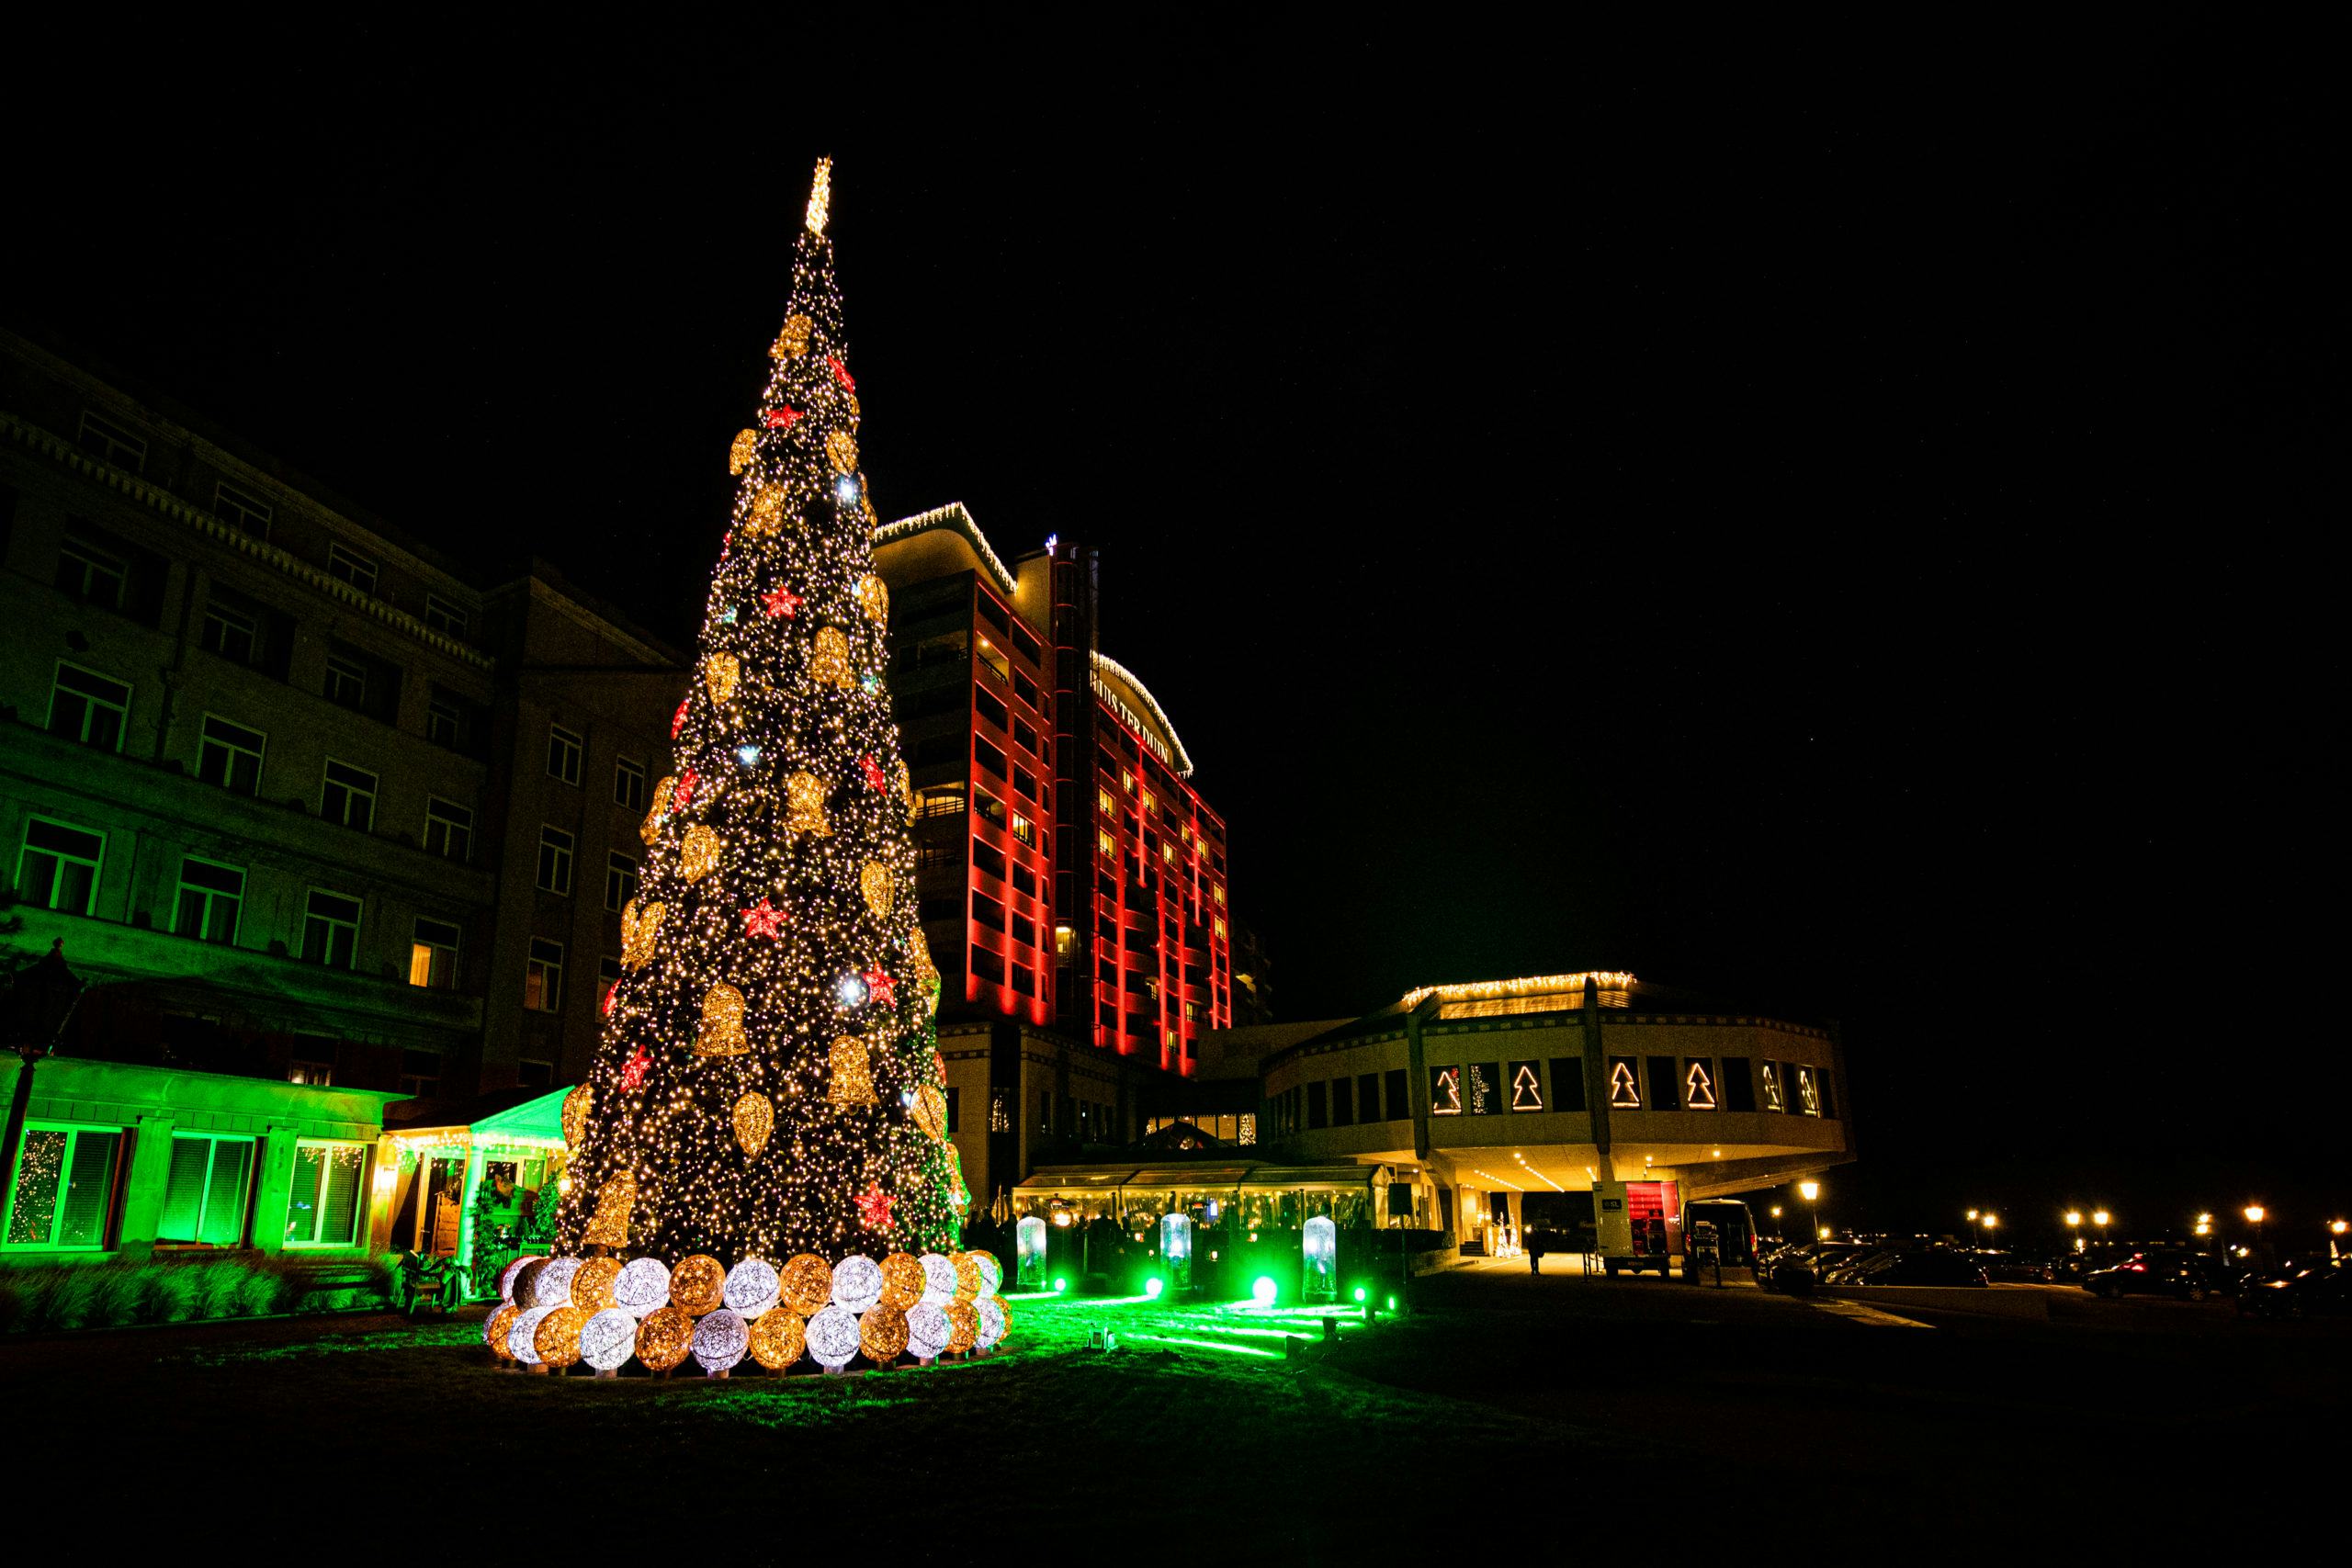 Huis ter Duin plaatst kerstboom met 100.000 lampjes voor het hotel